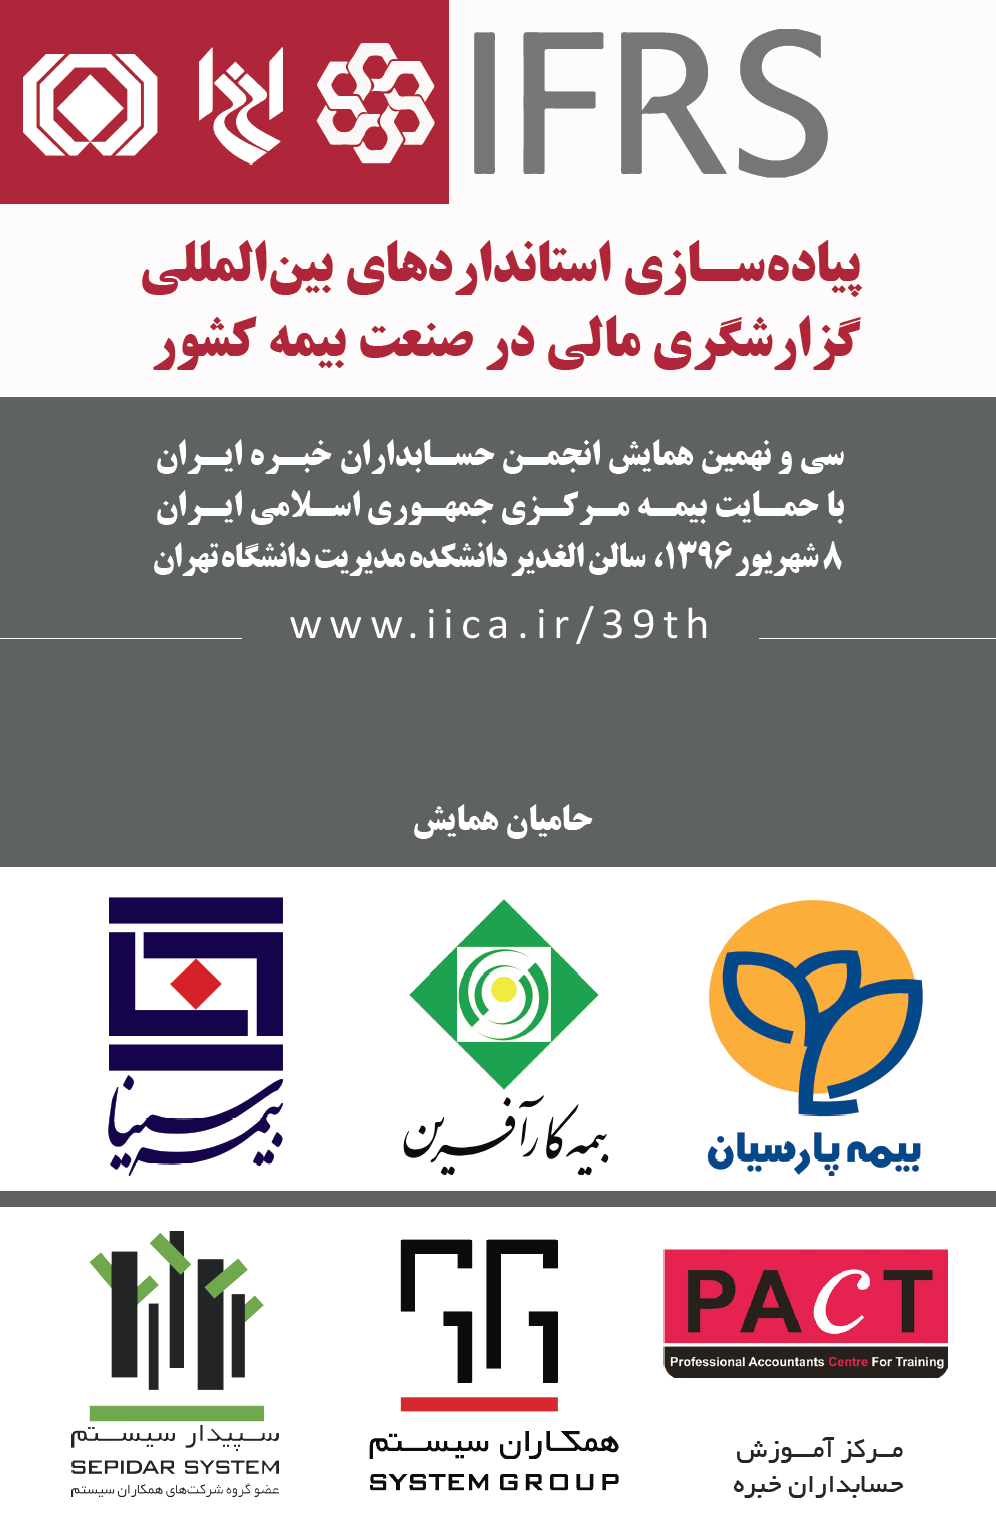 سی و نهمین همایش انجمن حسابداران خبره ایران با موضوع «پیاده‎سازی استانداردهای بین‎المللی گزارشگری مالی (IFRS) در صنعت بیمه کشور»، چهارشنبه، 8 شهریور 1396 برگزار خواهد شد